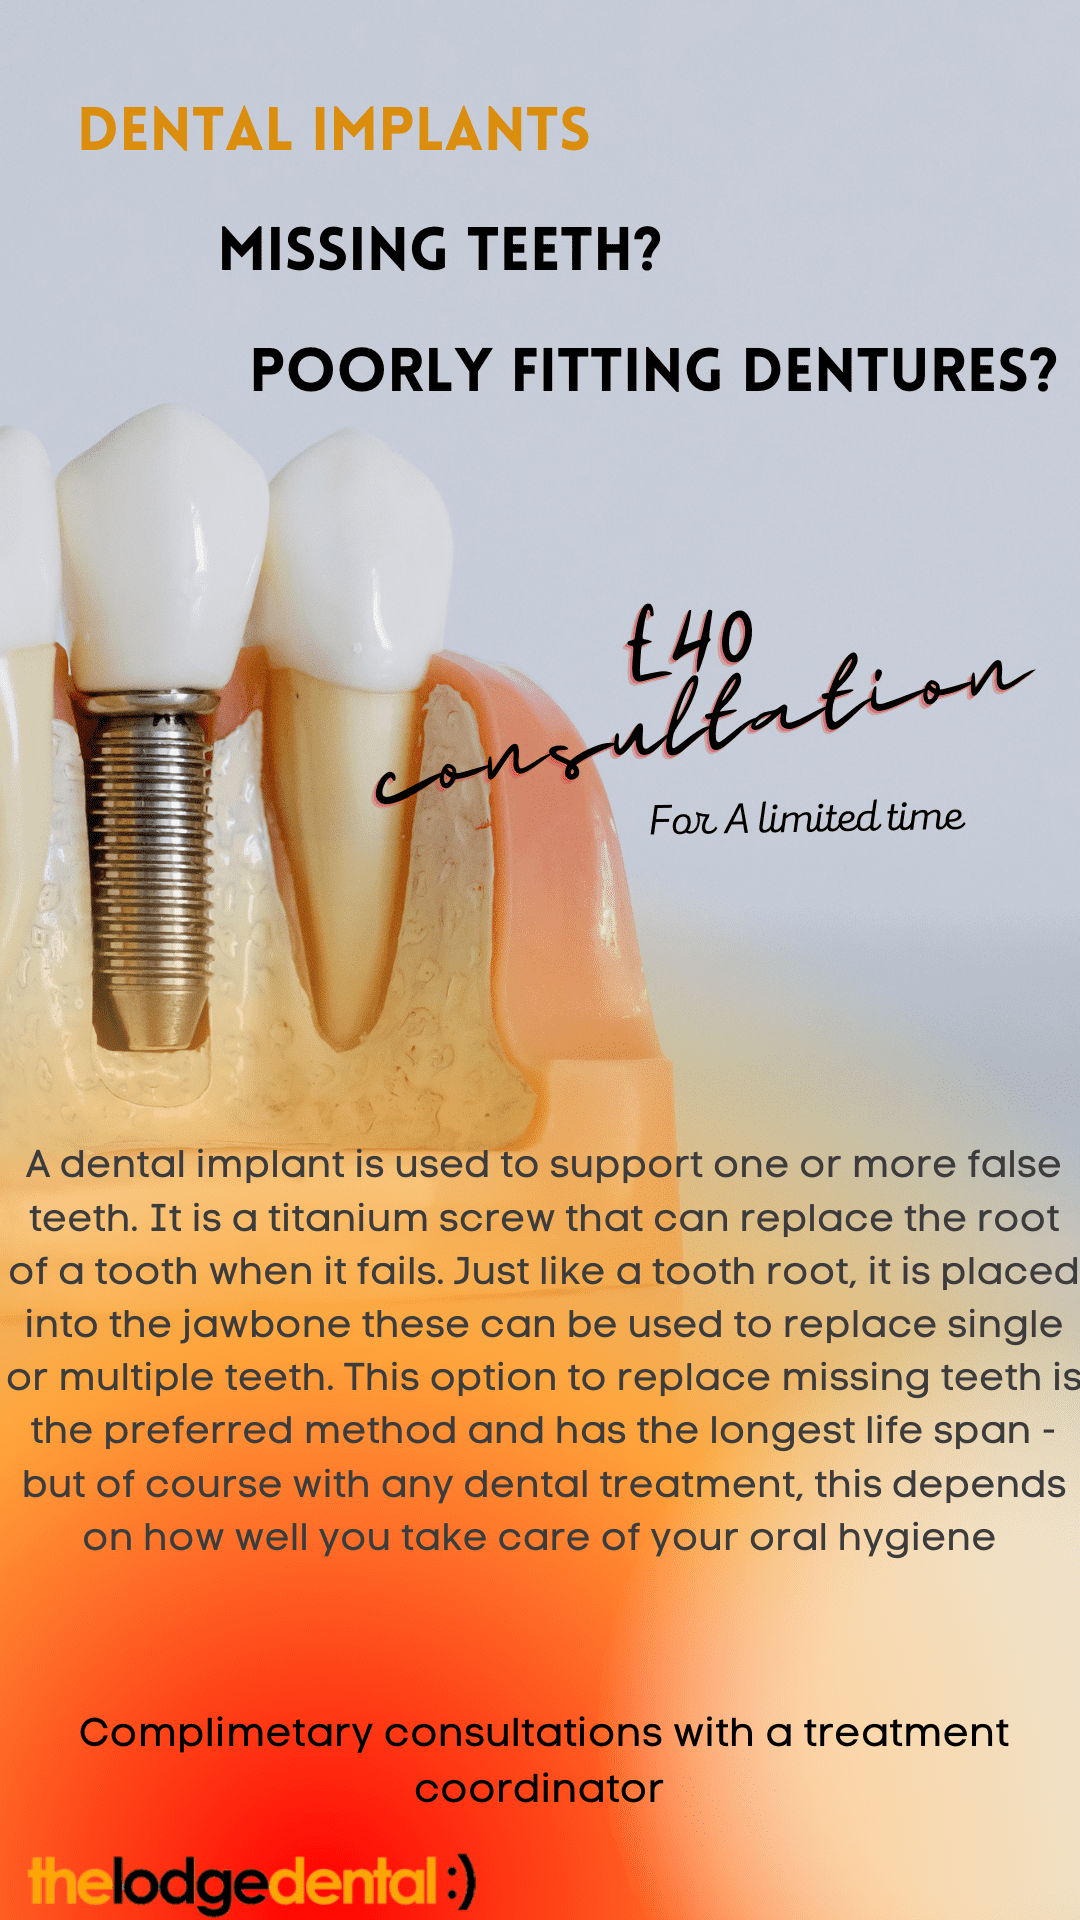 dental implants offer